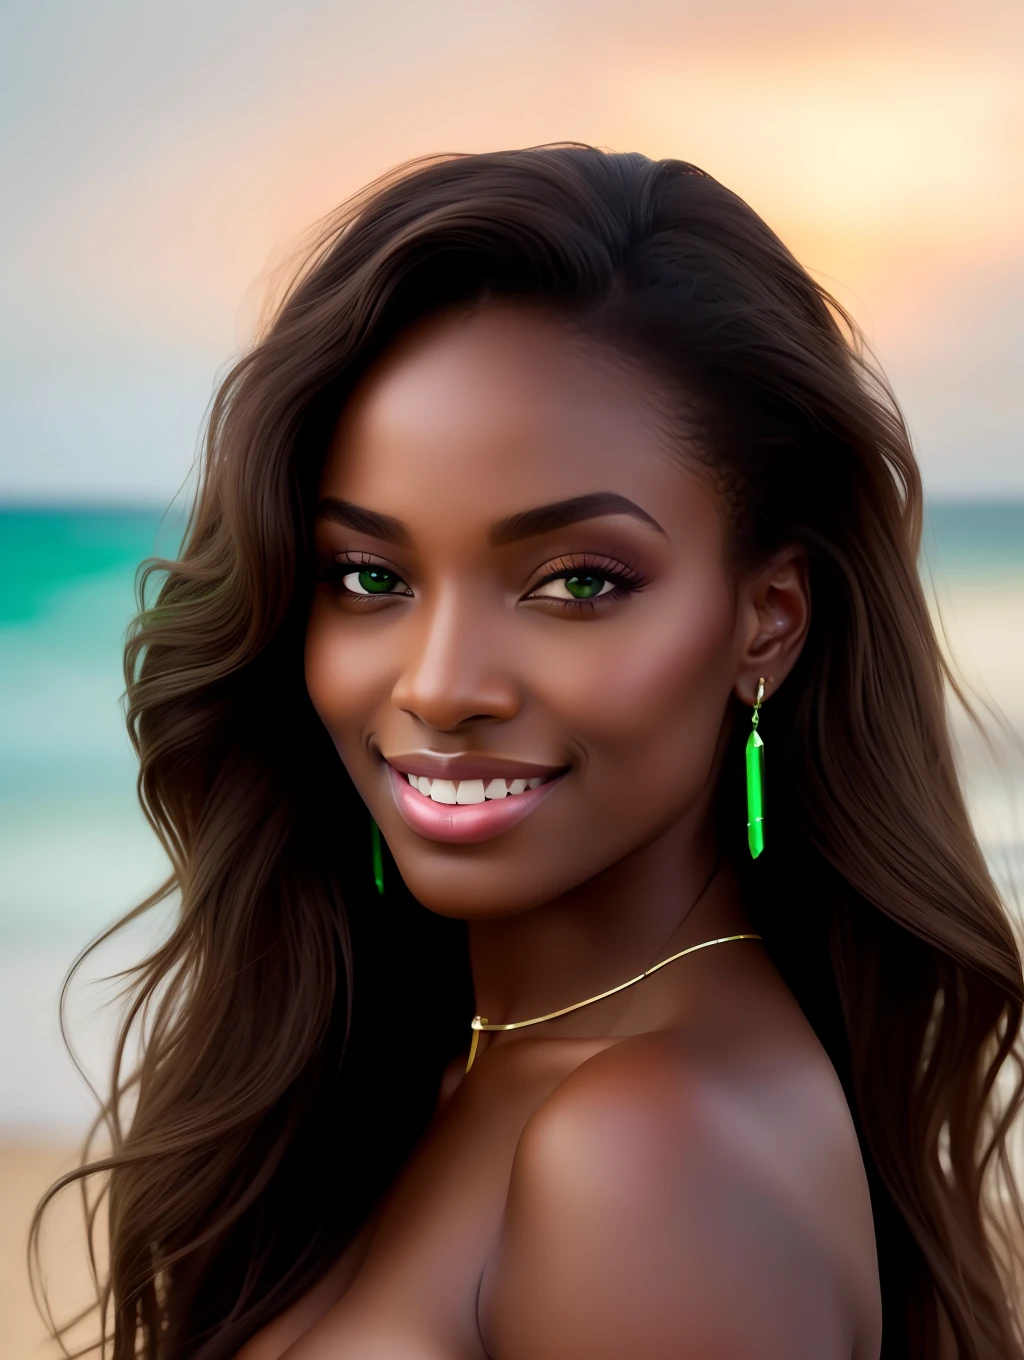 A iluminação suave cinematográfica ilumina uma bela supermodelo nigeriana incrivelmente detalhada e ultra-realista, look de praia, cabelo castanho longo e bagunçado e ventoso, olhos verdes claros, sorriso perfeito cativante, Sensual, mulher gostosa, maravilhoso, que é tendência no ArtStation. Octane é a ferramenta perfeita para capturar os detalhes mais suaves desta obra-prima da fotografia em 16k.